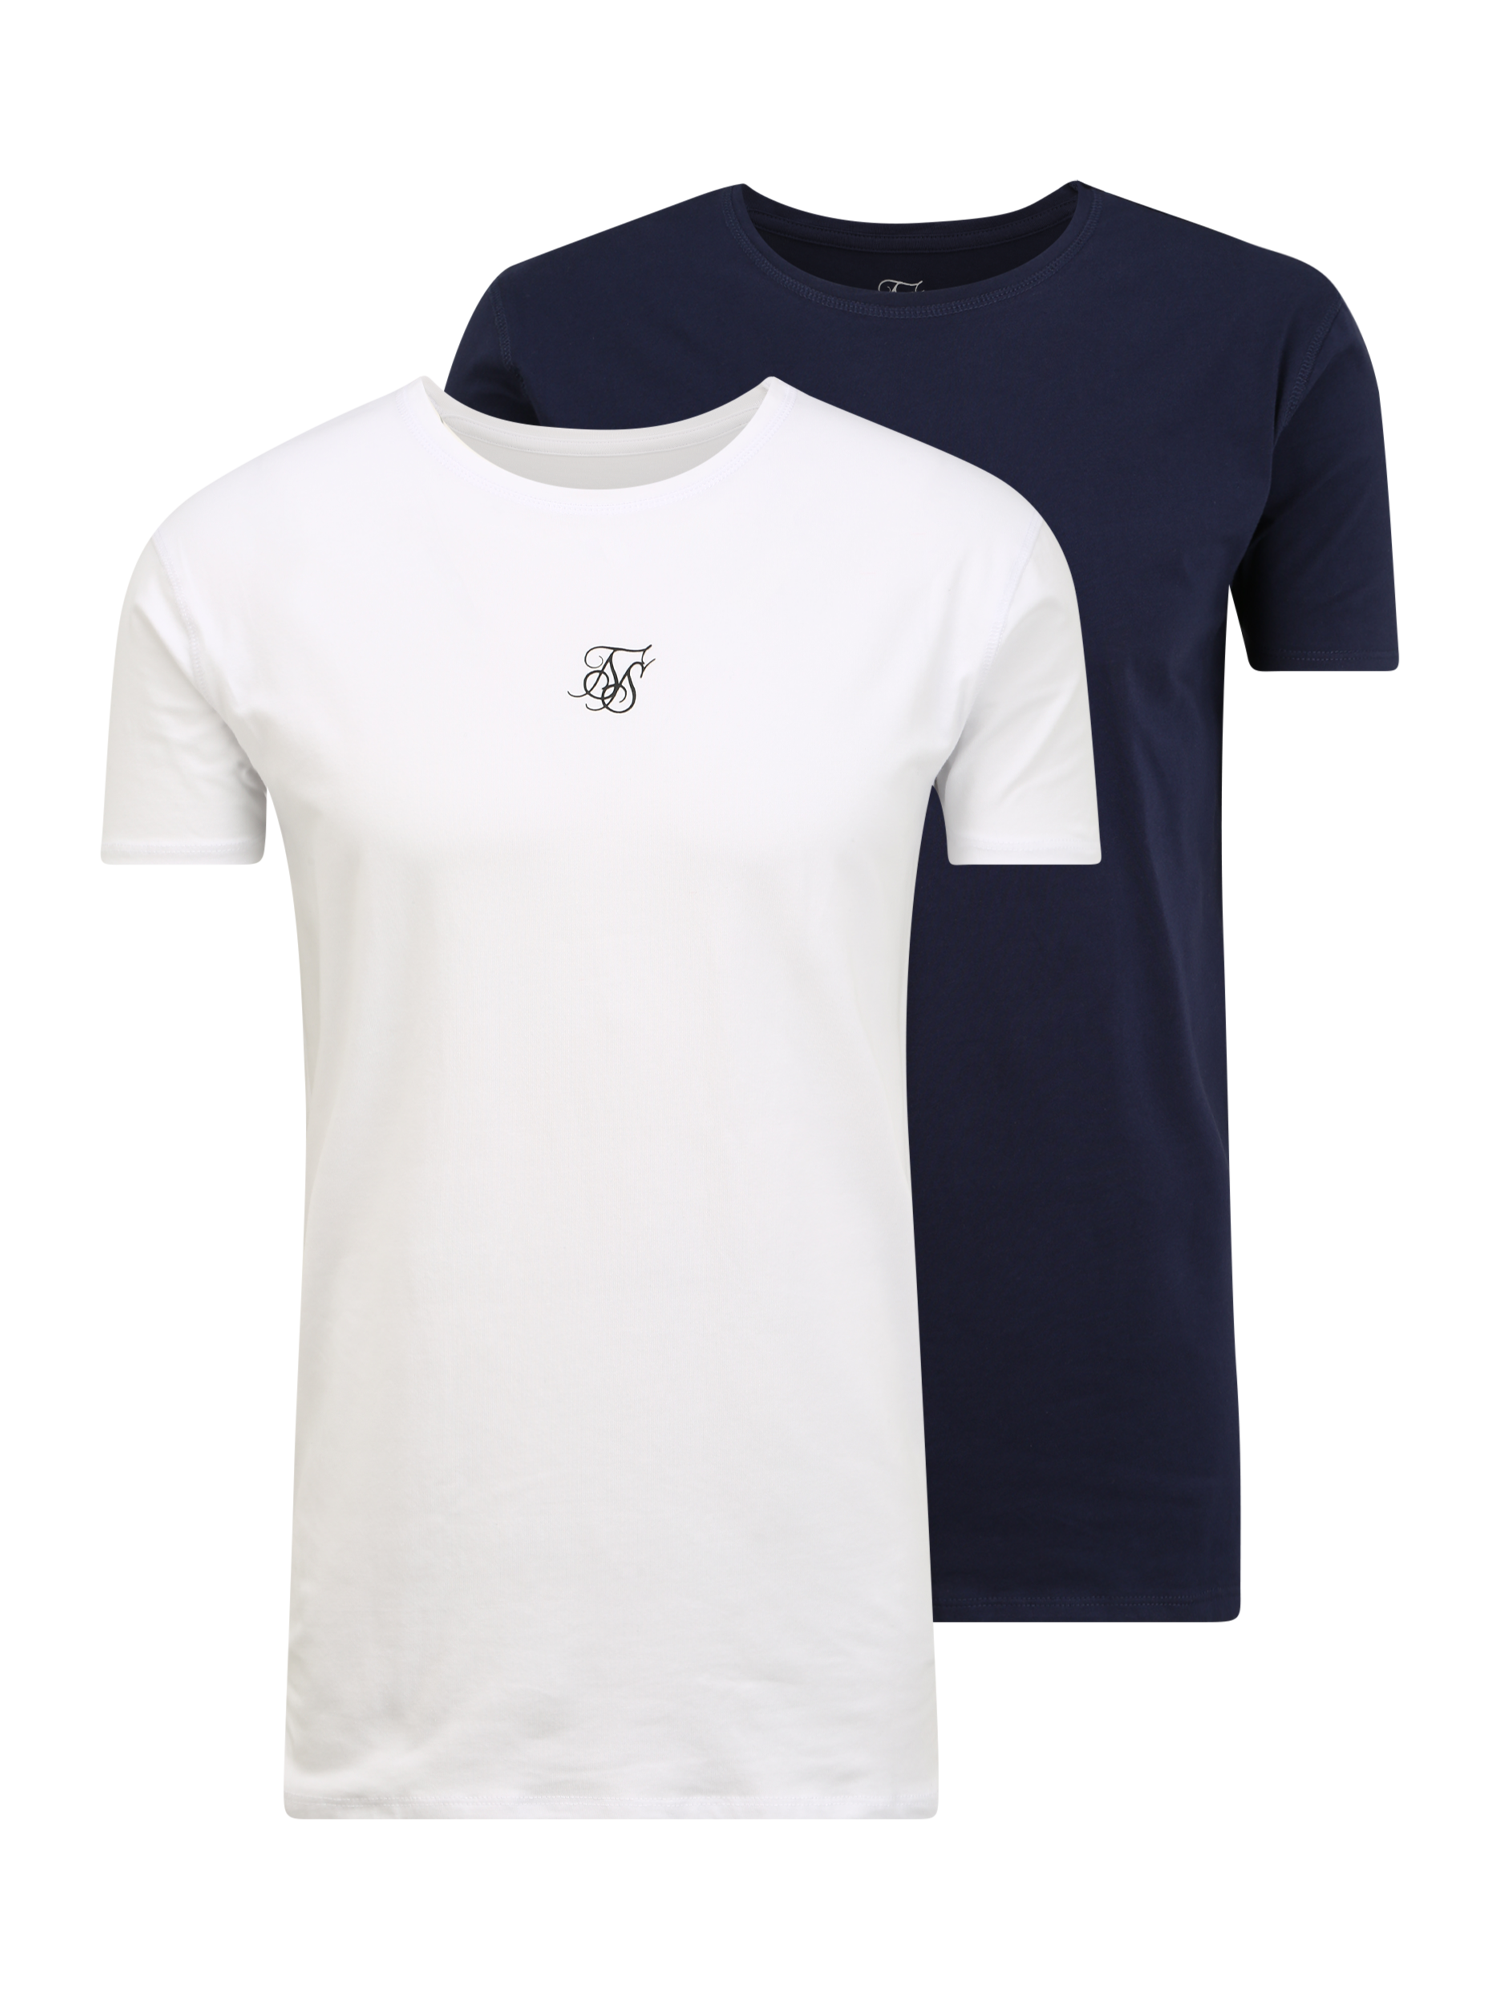 Odzież Koszulki SikSilk Koszulka w kolorze Granatowy, Białym 